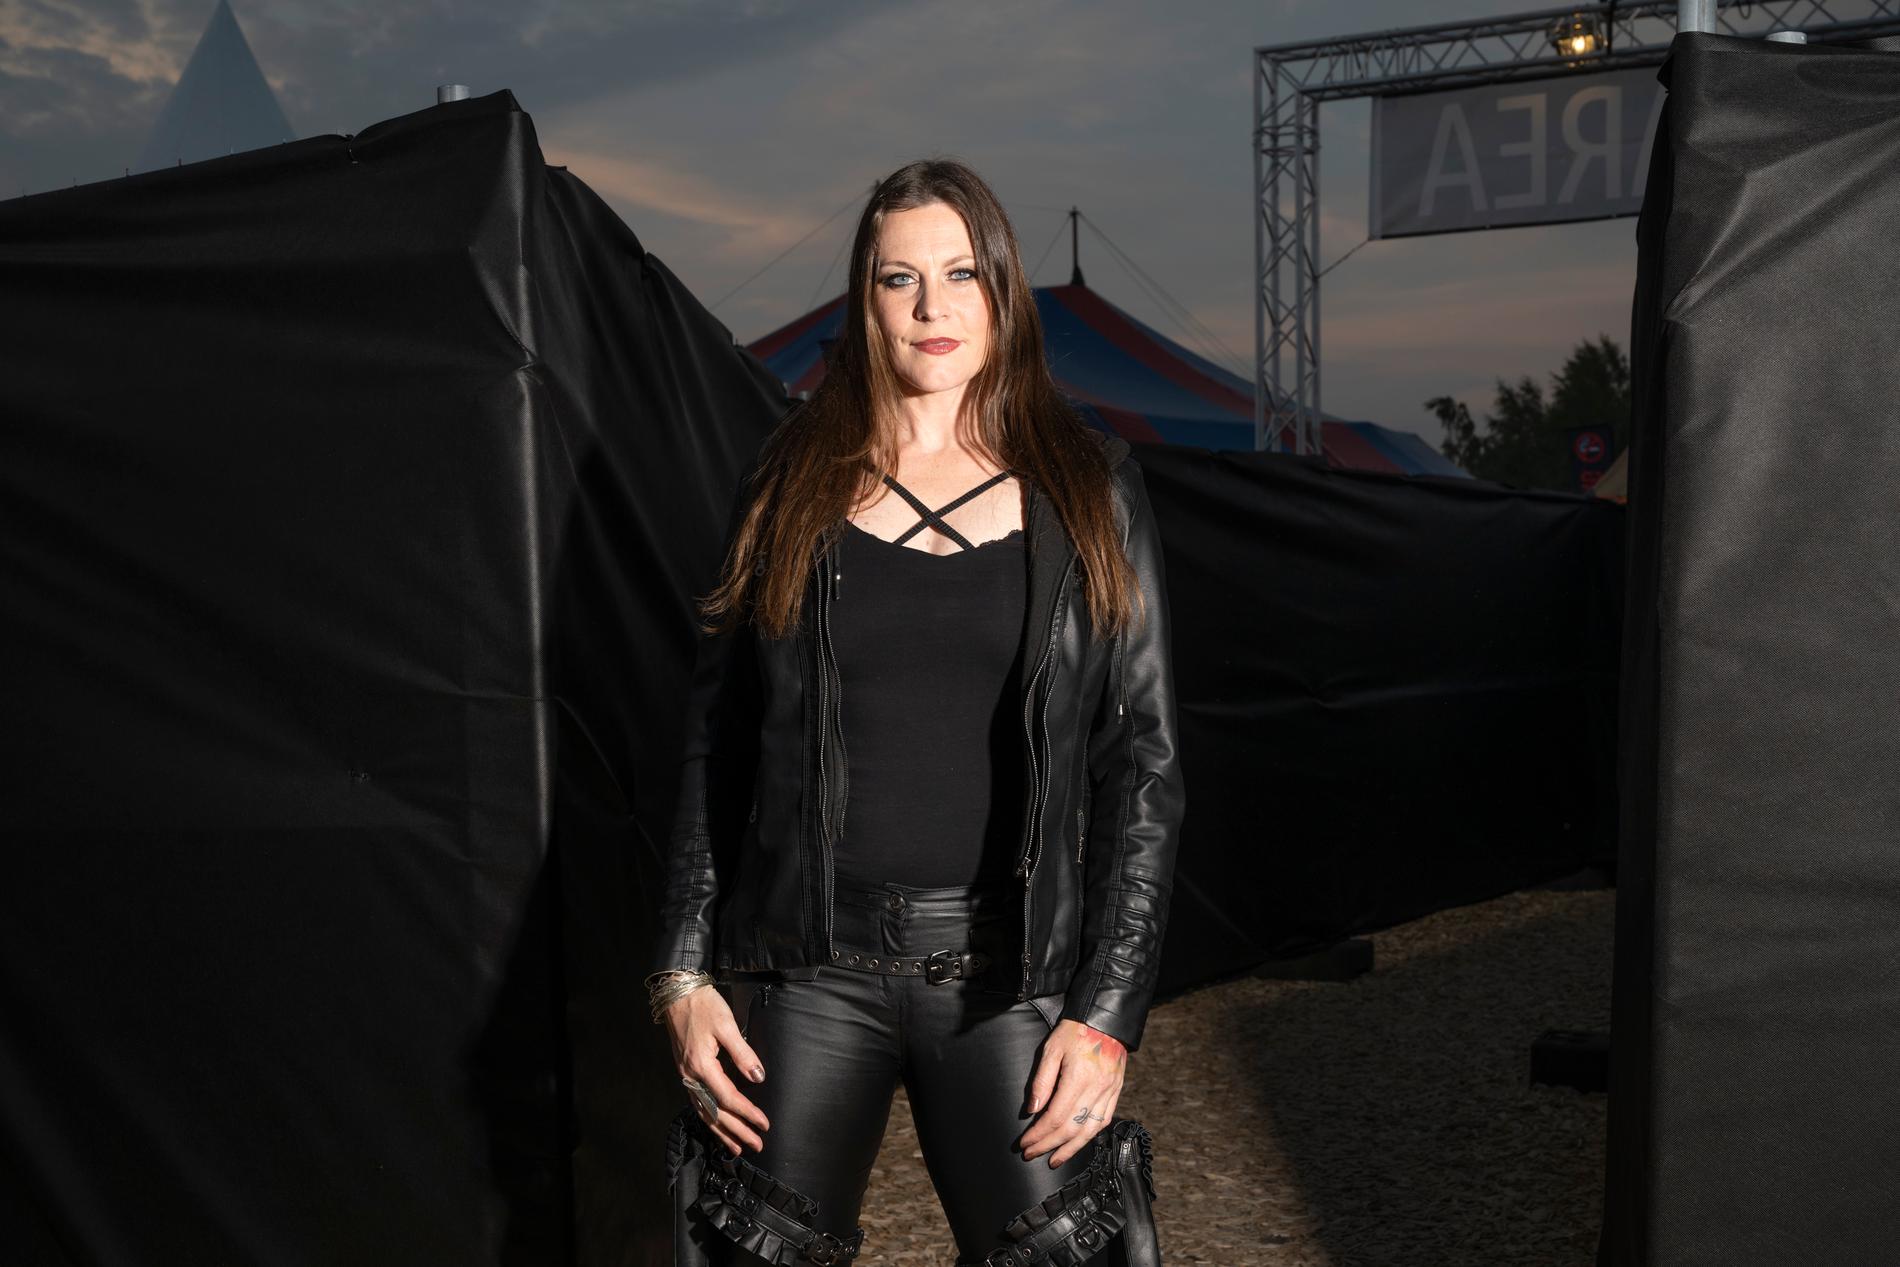 Floor Jansen, sångerska i Nightwish, är peppad på den nya turnén efter den långa pandemin: "Man kommer verkligen in i sina rutiner snabbt igen. Plötsligt känns det svårt att fatta hur långt två år är på riktigt".